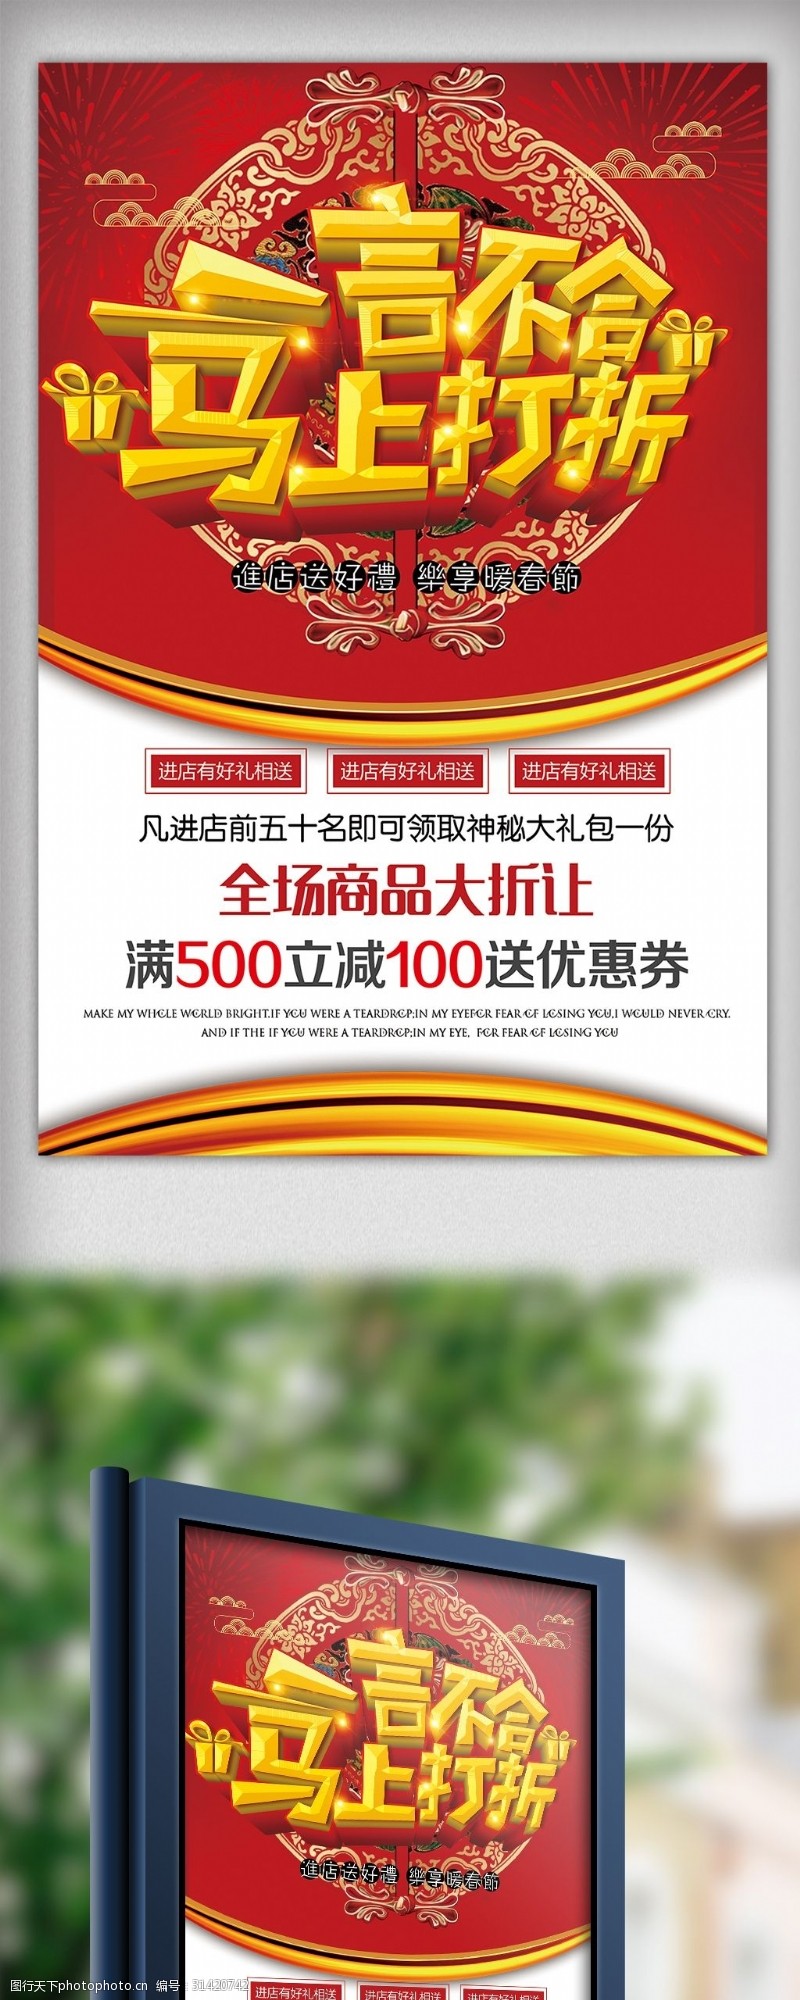 马年模板下载节日喜庆打折促销宣传海报模板下载